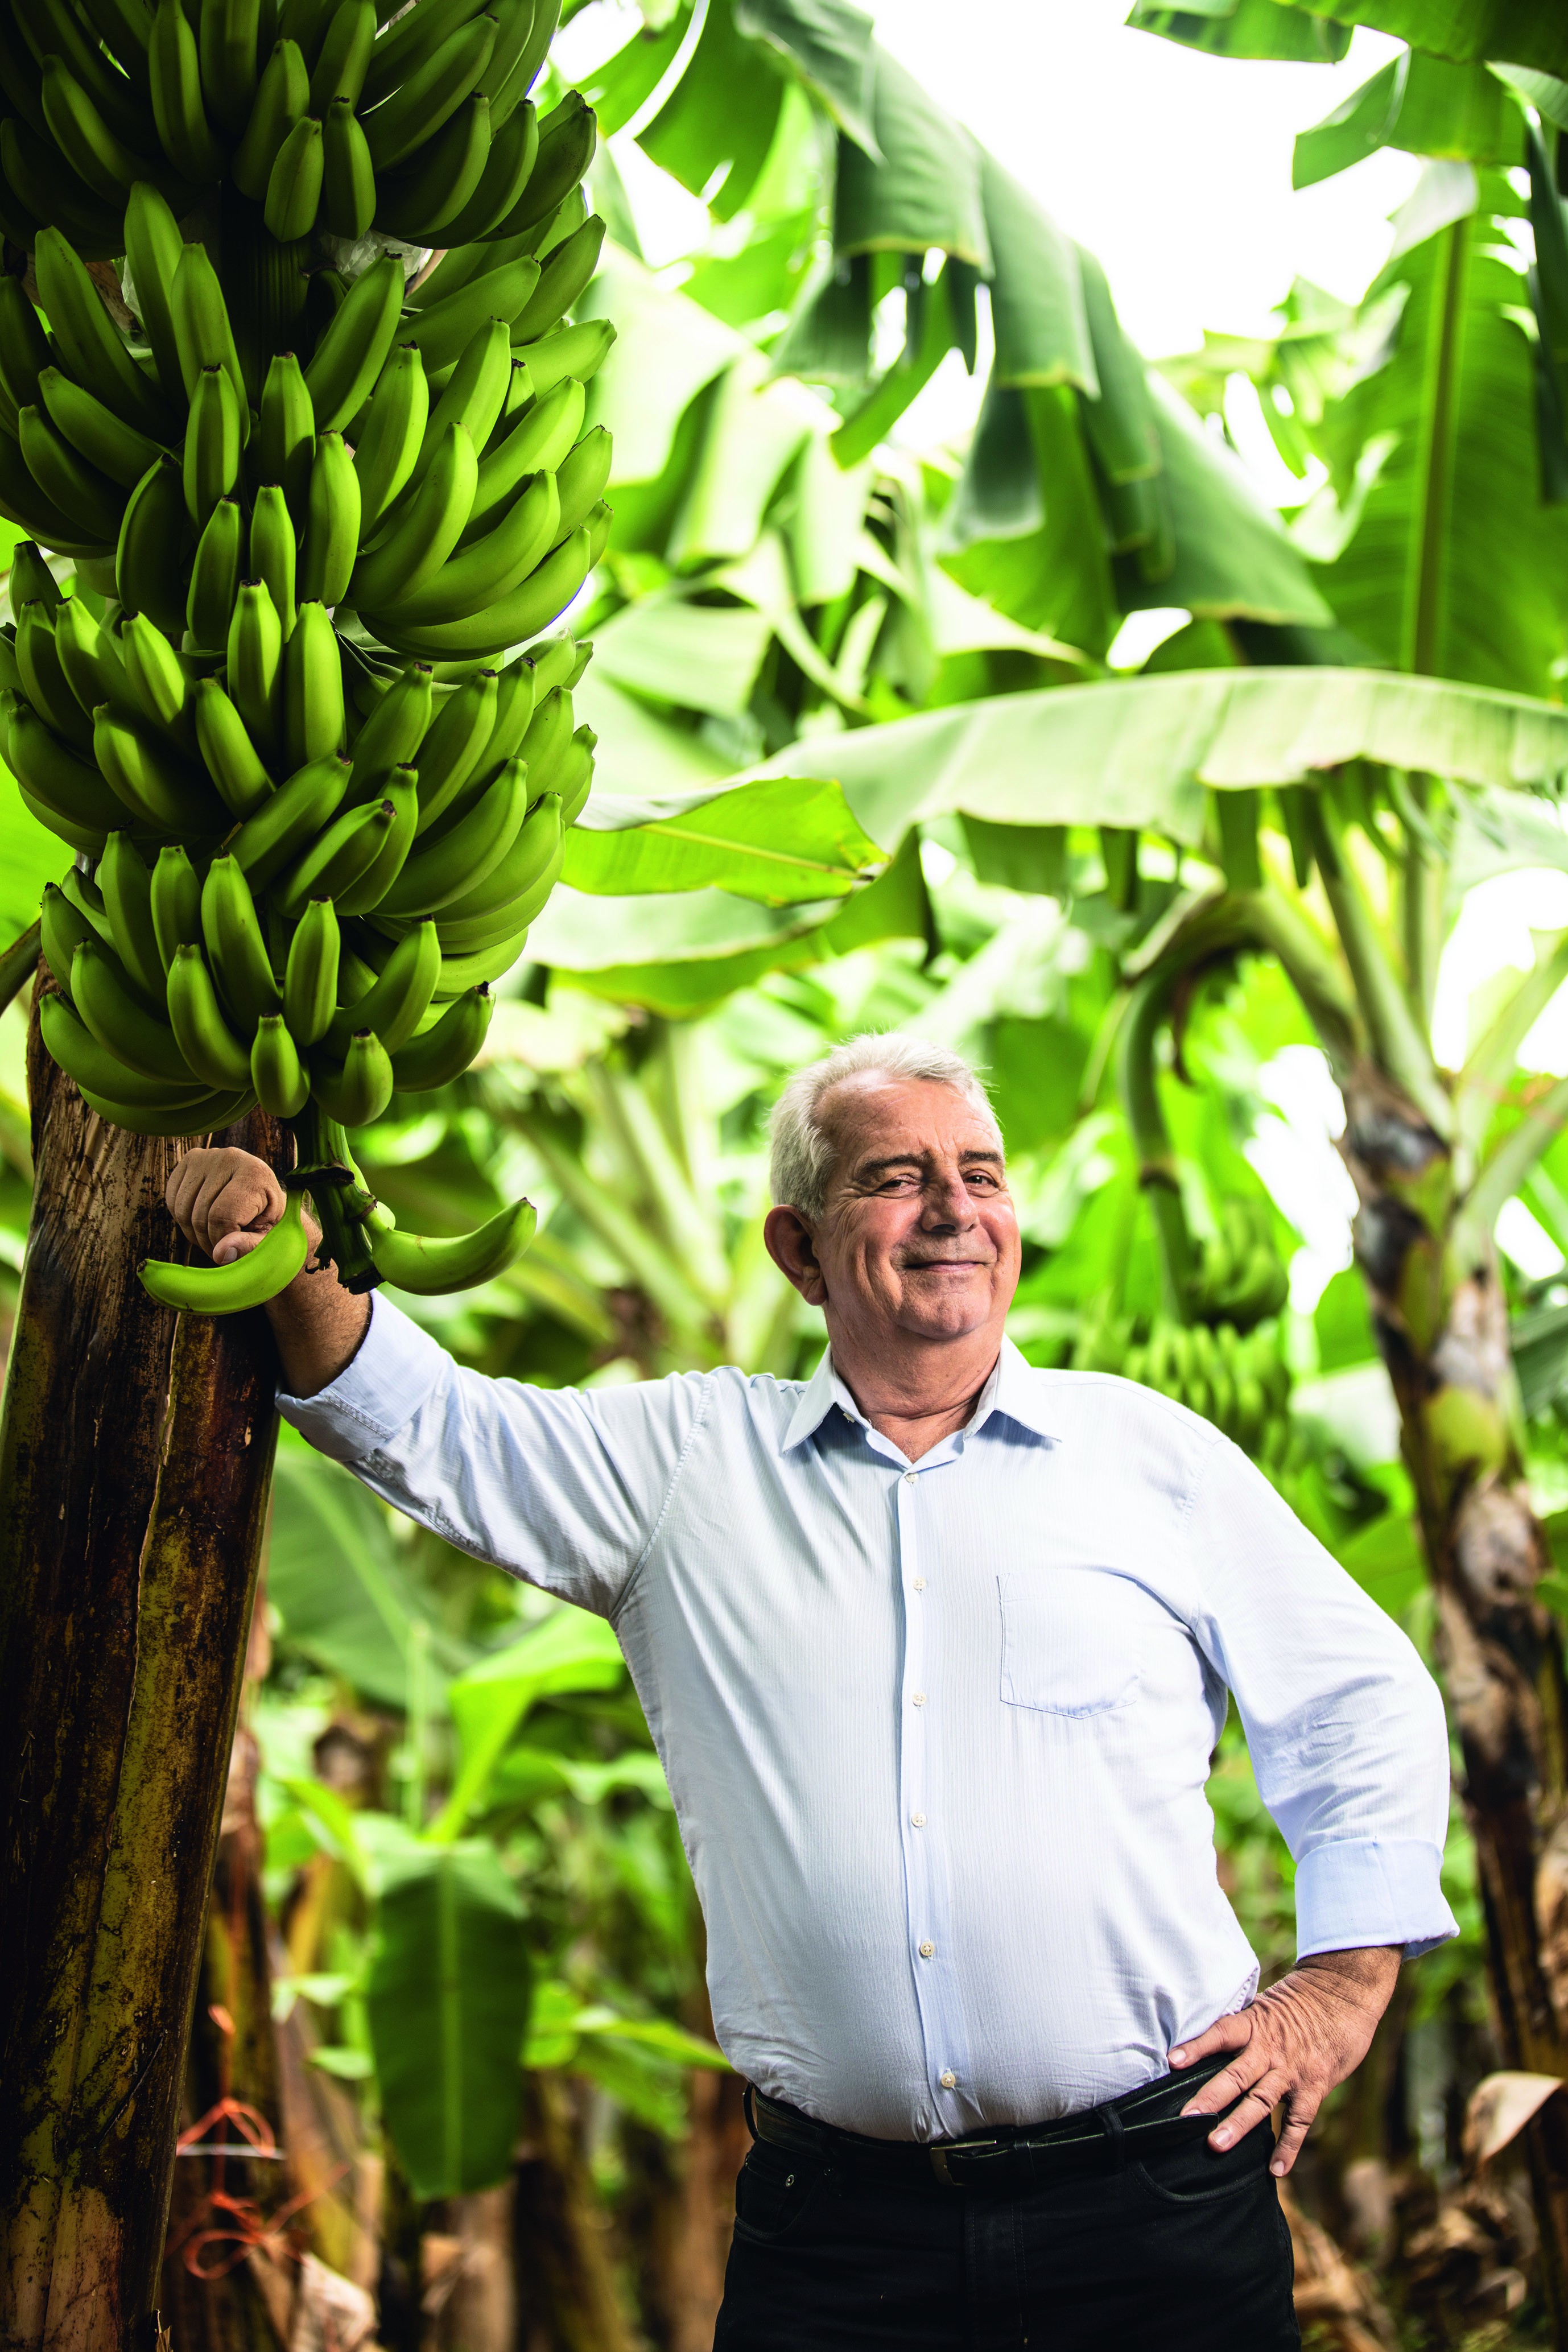 O paulistano que migrou para o Ceará em 1999 se tornou o maior exportador de bananas do Brasil para o mercado europeu (Foto: Luiz Maximiano/Editora Globo)